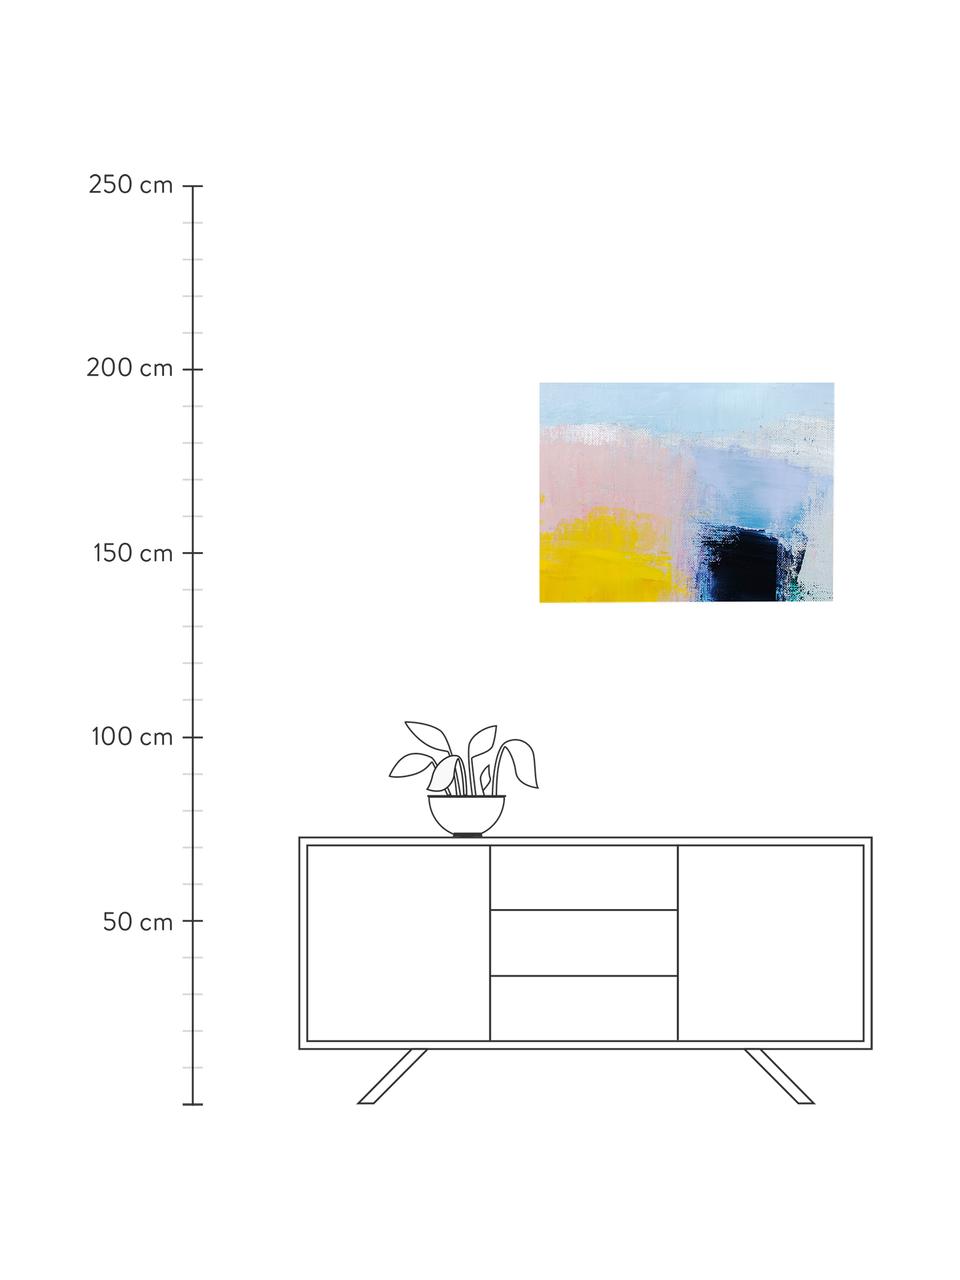 Impression sur toile Abstract Art, Multicolore, larg. 80 x haut. 60 cm